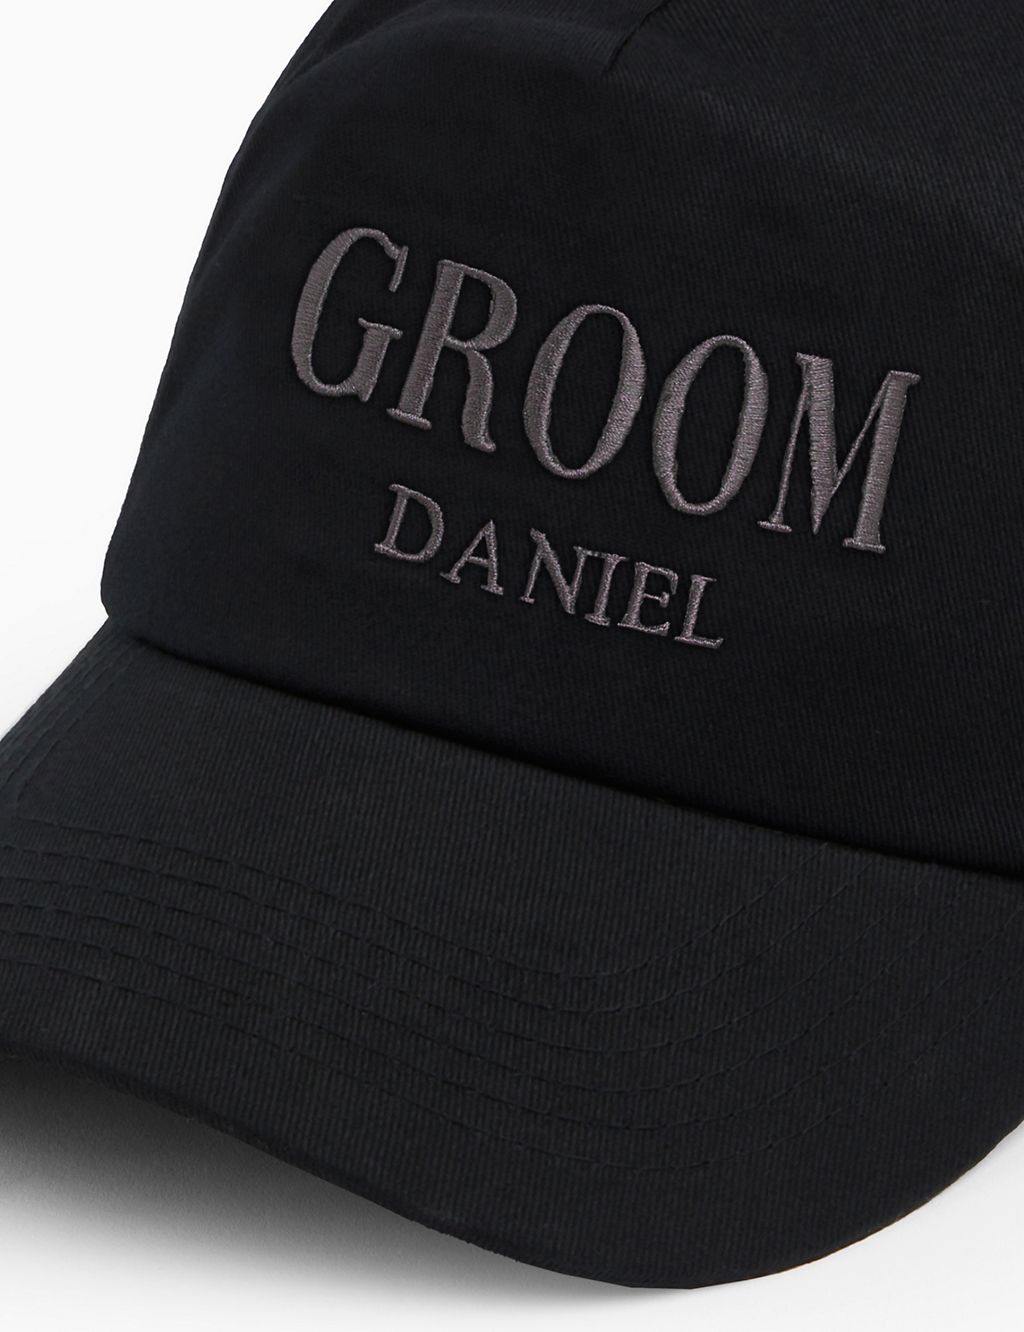 Personalised Groom Cap 2 of 3